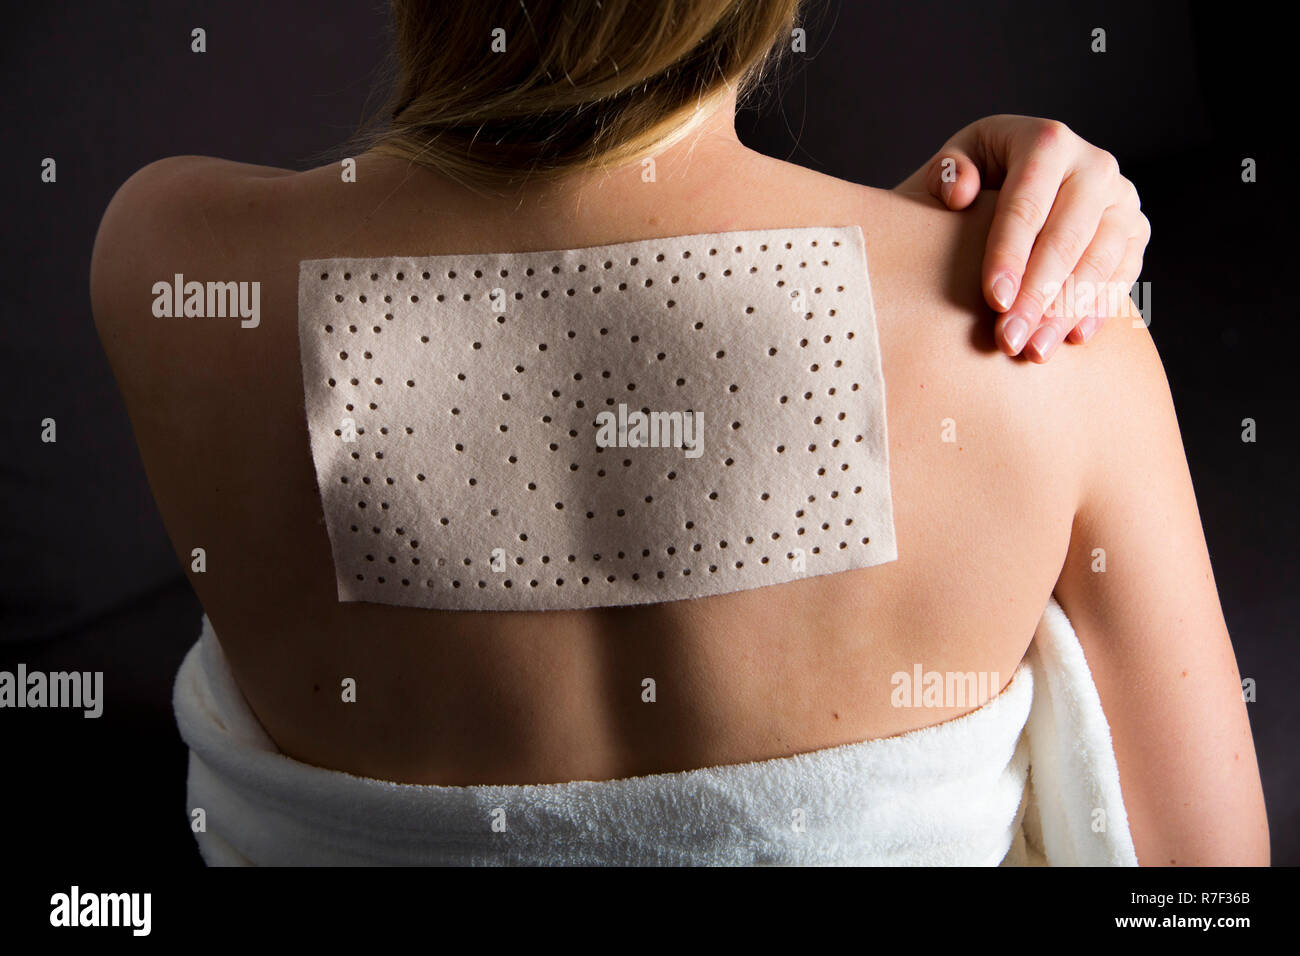 Junge Frau mit Rückenbeschwerden hat eine wärme Pflaster angewendet Stockfoto